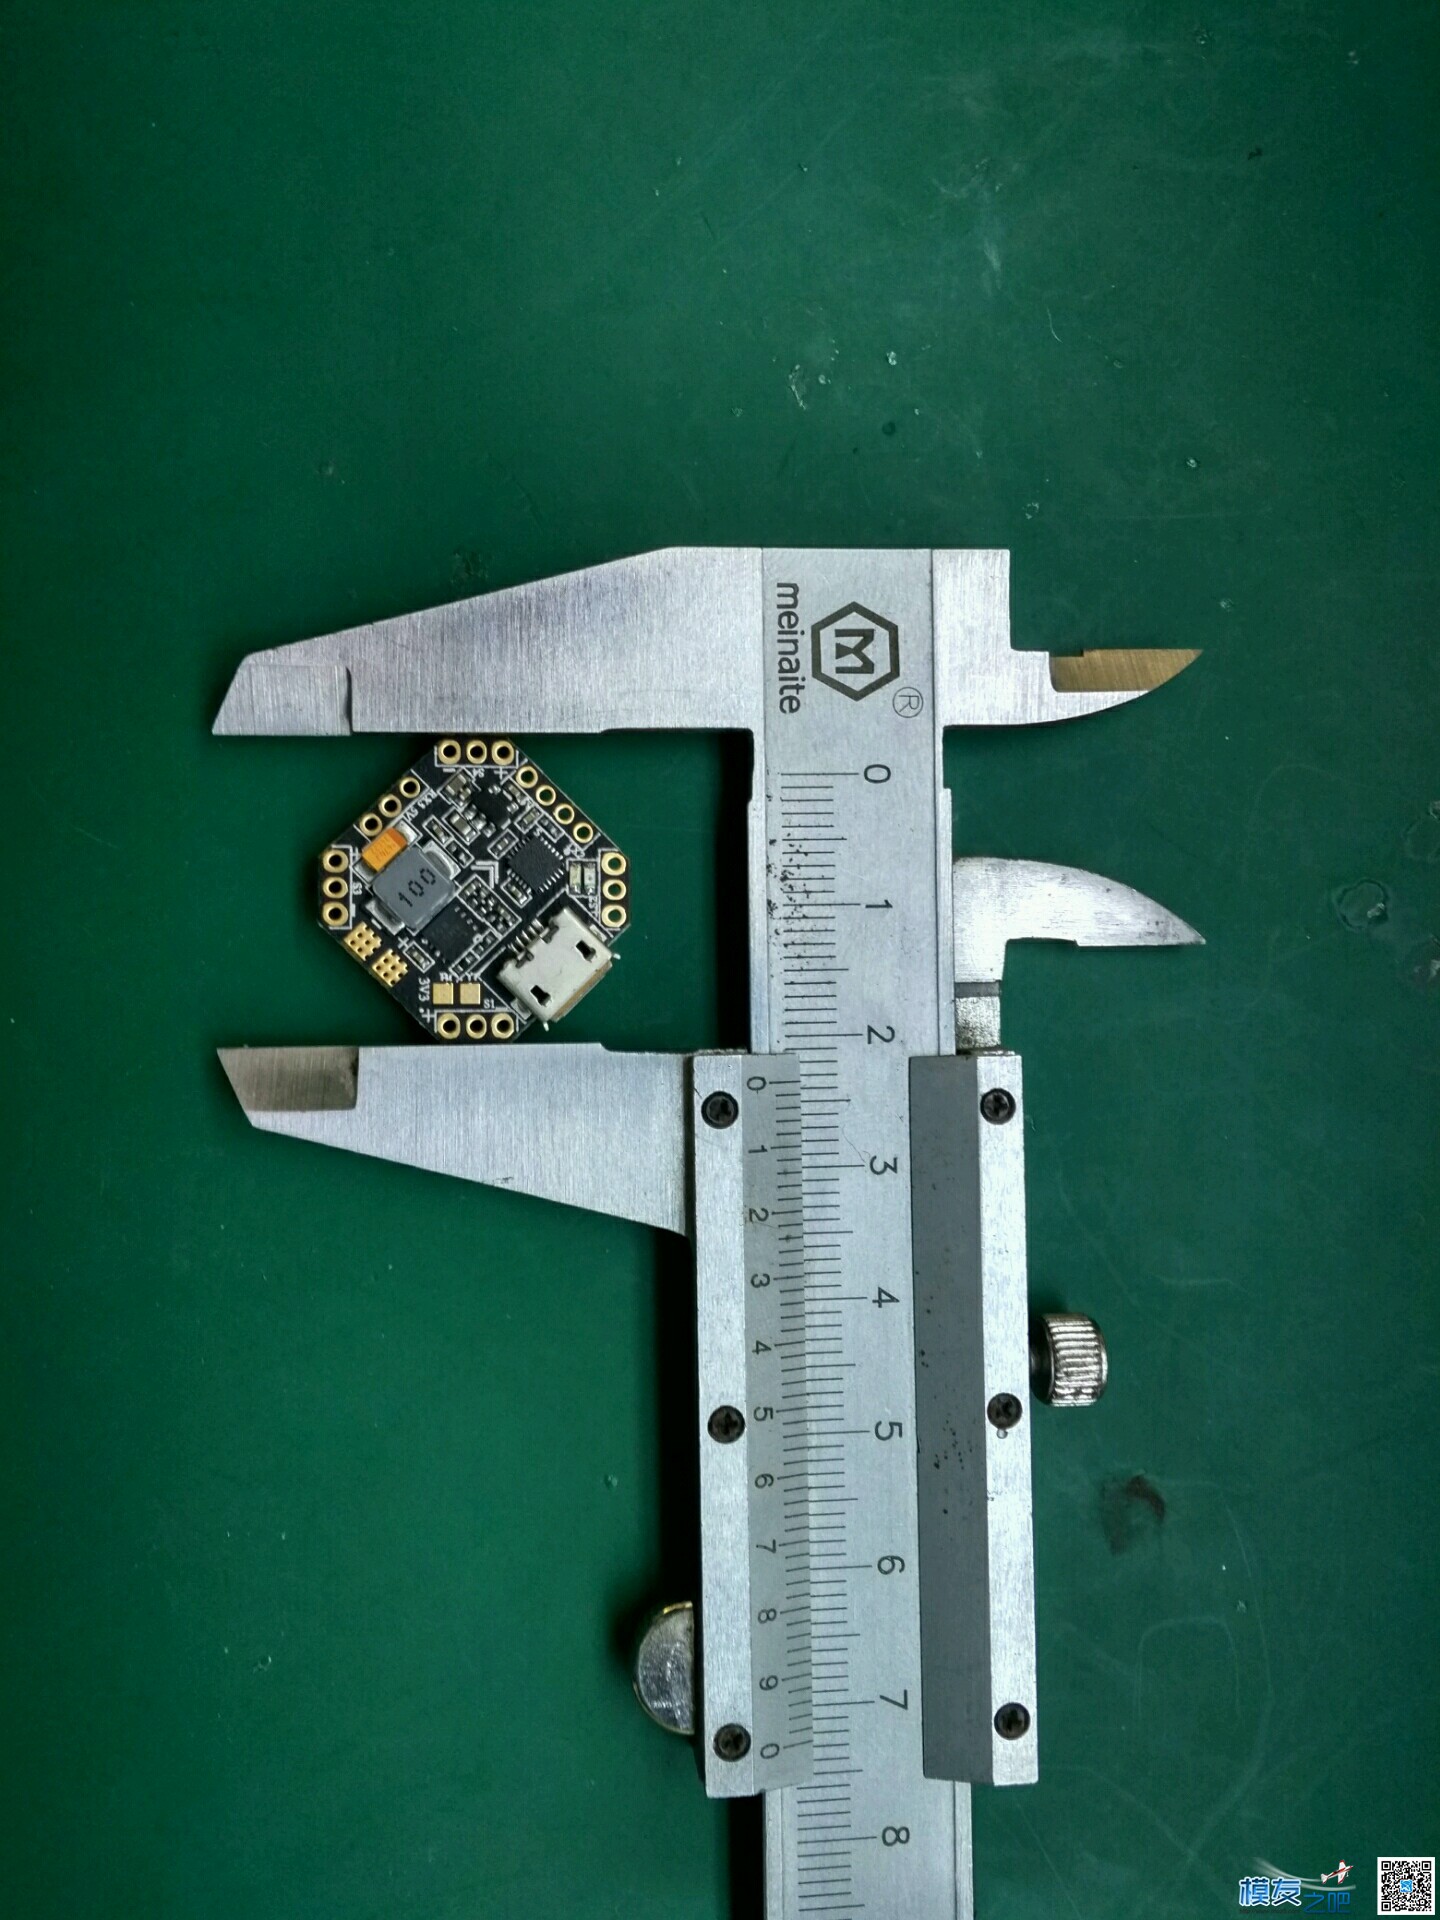 银燕F3 Femto 评测报告一(开箱+介绍+安装调试+试飞) 穿越机,图传,飞控,电调,电机 作者:迟伤 1737 